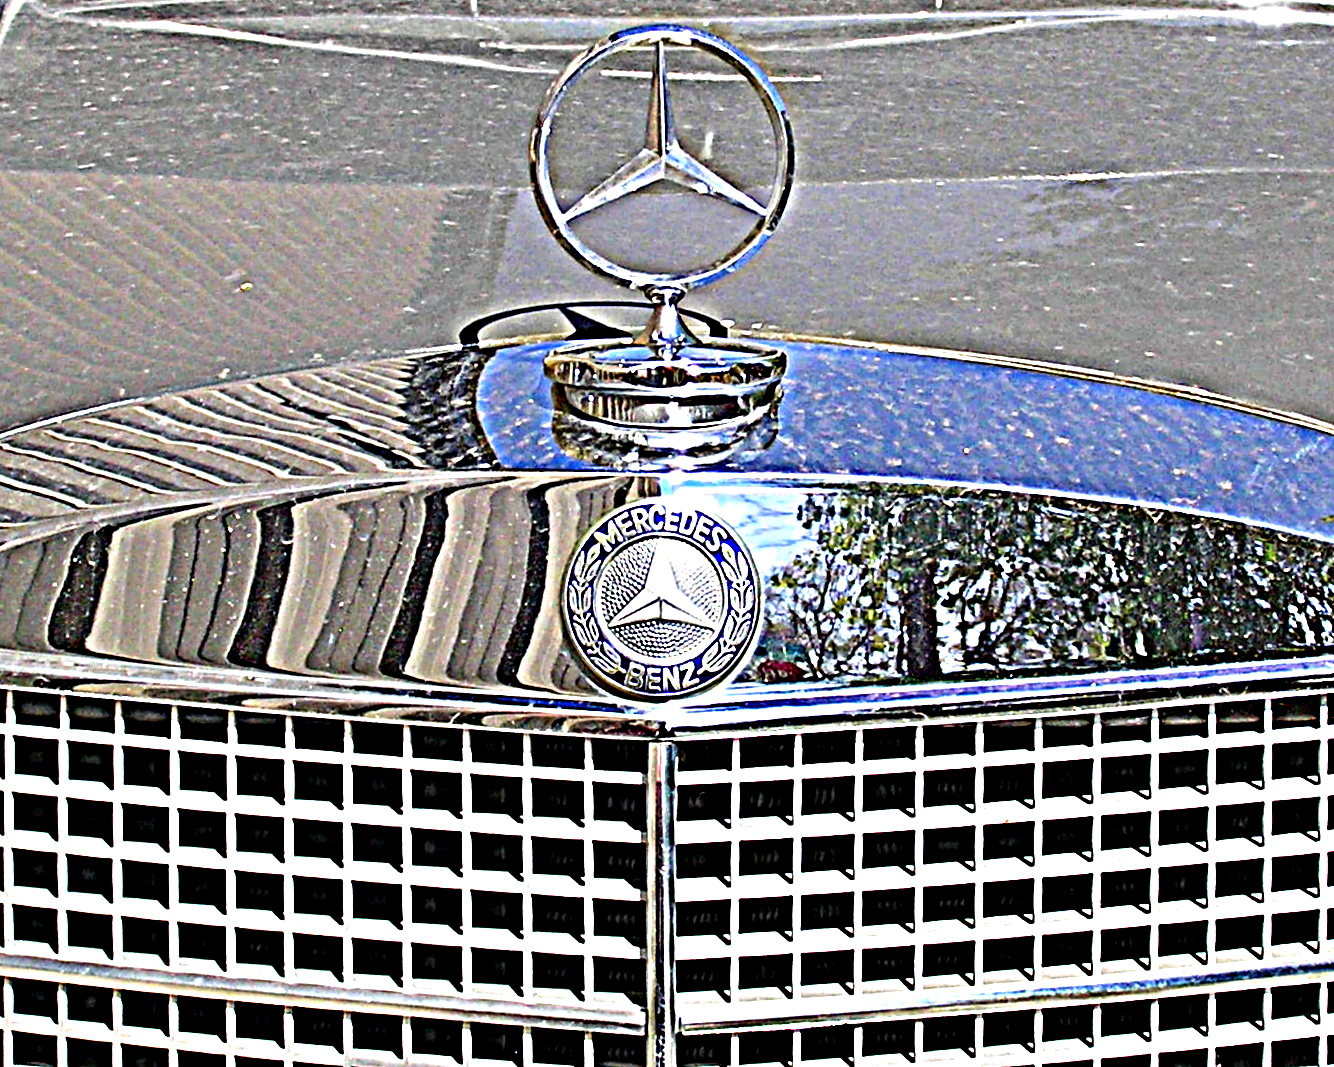 2001 Mercedes benz s430 battery #3